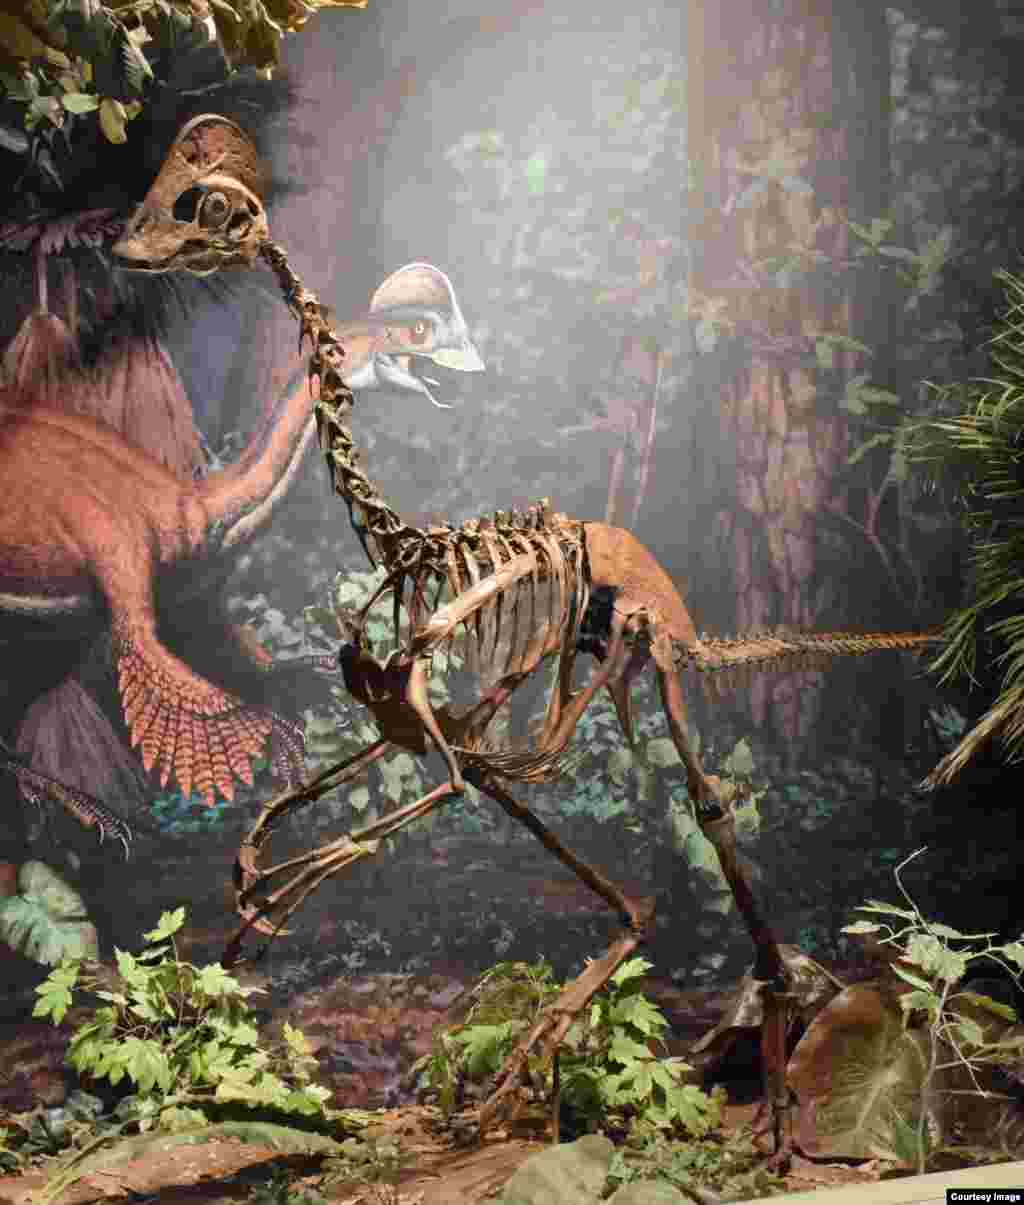 Ky dinosaur i ri, me nofkën &ldquo;pula nga ferri&rdquo;,&nbsp; ka qënë bashkëkohës i dinosaurit të famshëm T.rex. Tre skelete të pjesshme të ruajtura mirë u zbuluan në Dakotën e Veriut dhe të Jugut në Formacionin Përroi i Djallit. &nbsp;Dinosauri që duket si zog, ishte 1.5 metra i lartë dhe nga sqepi deri tek bishti kishte gjatësinë prej 3 metra e gjysmë dhe peshonte 300 kilogram.&nbsp; (Carnegie Museum of Natural History)&nbsp;